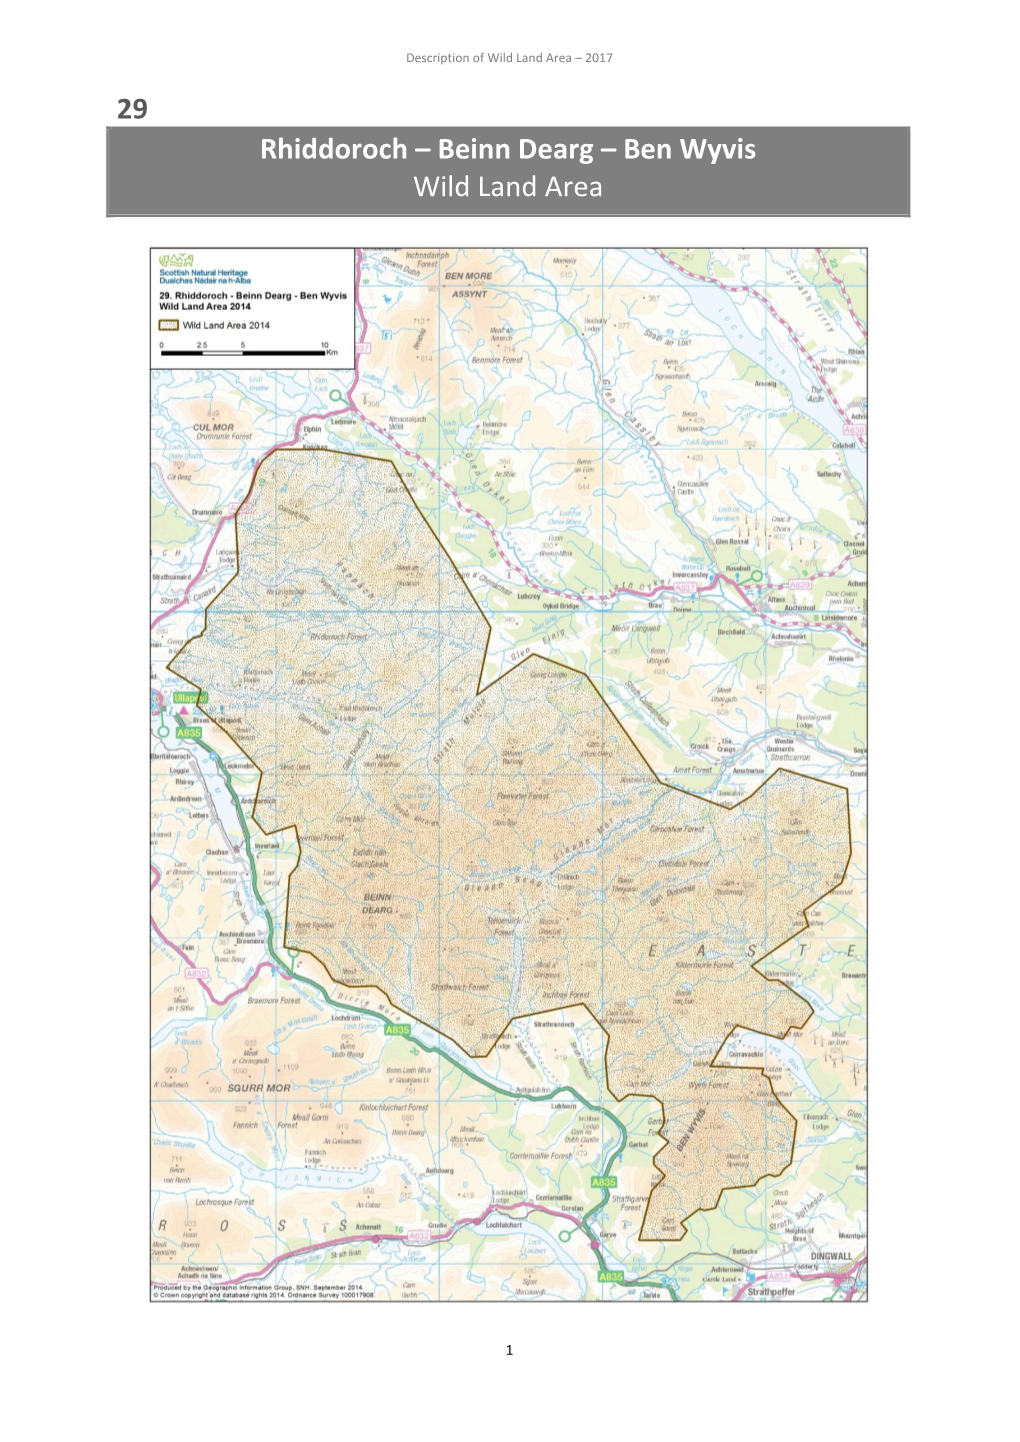 29 Rhiddoroch – Beinn Dearg – Ben Wyvis Wild Land Area